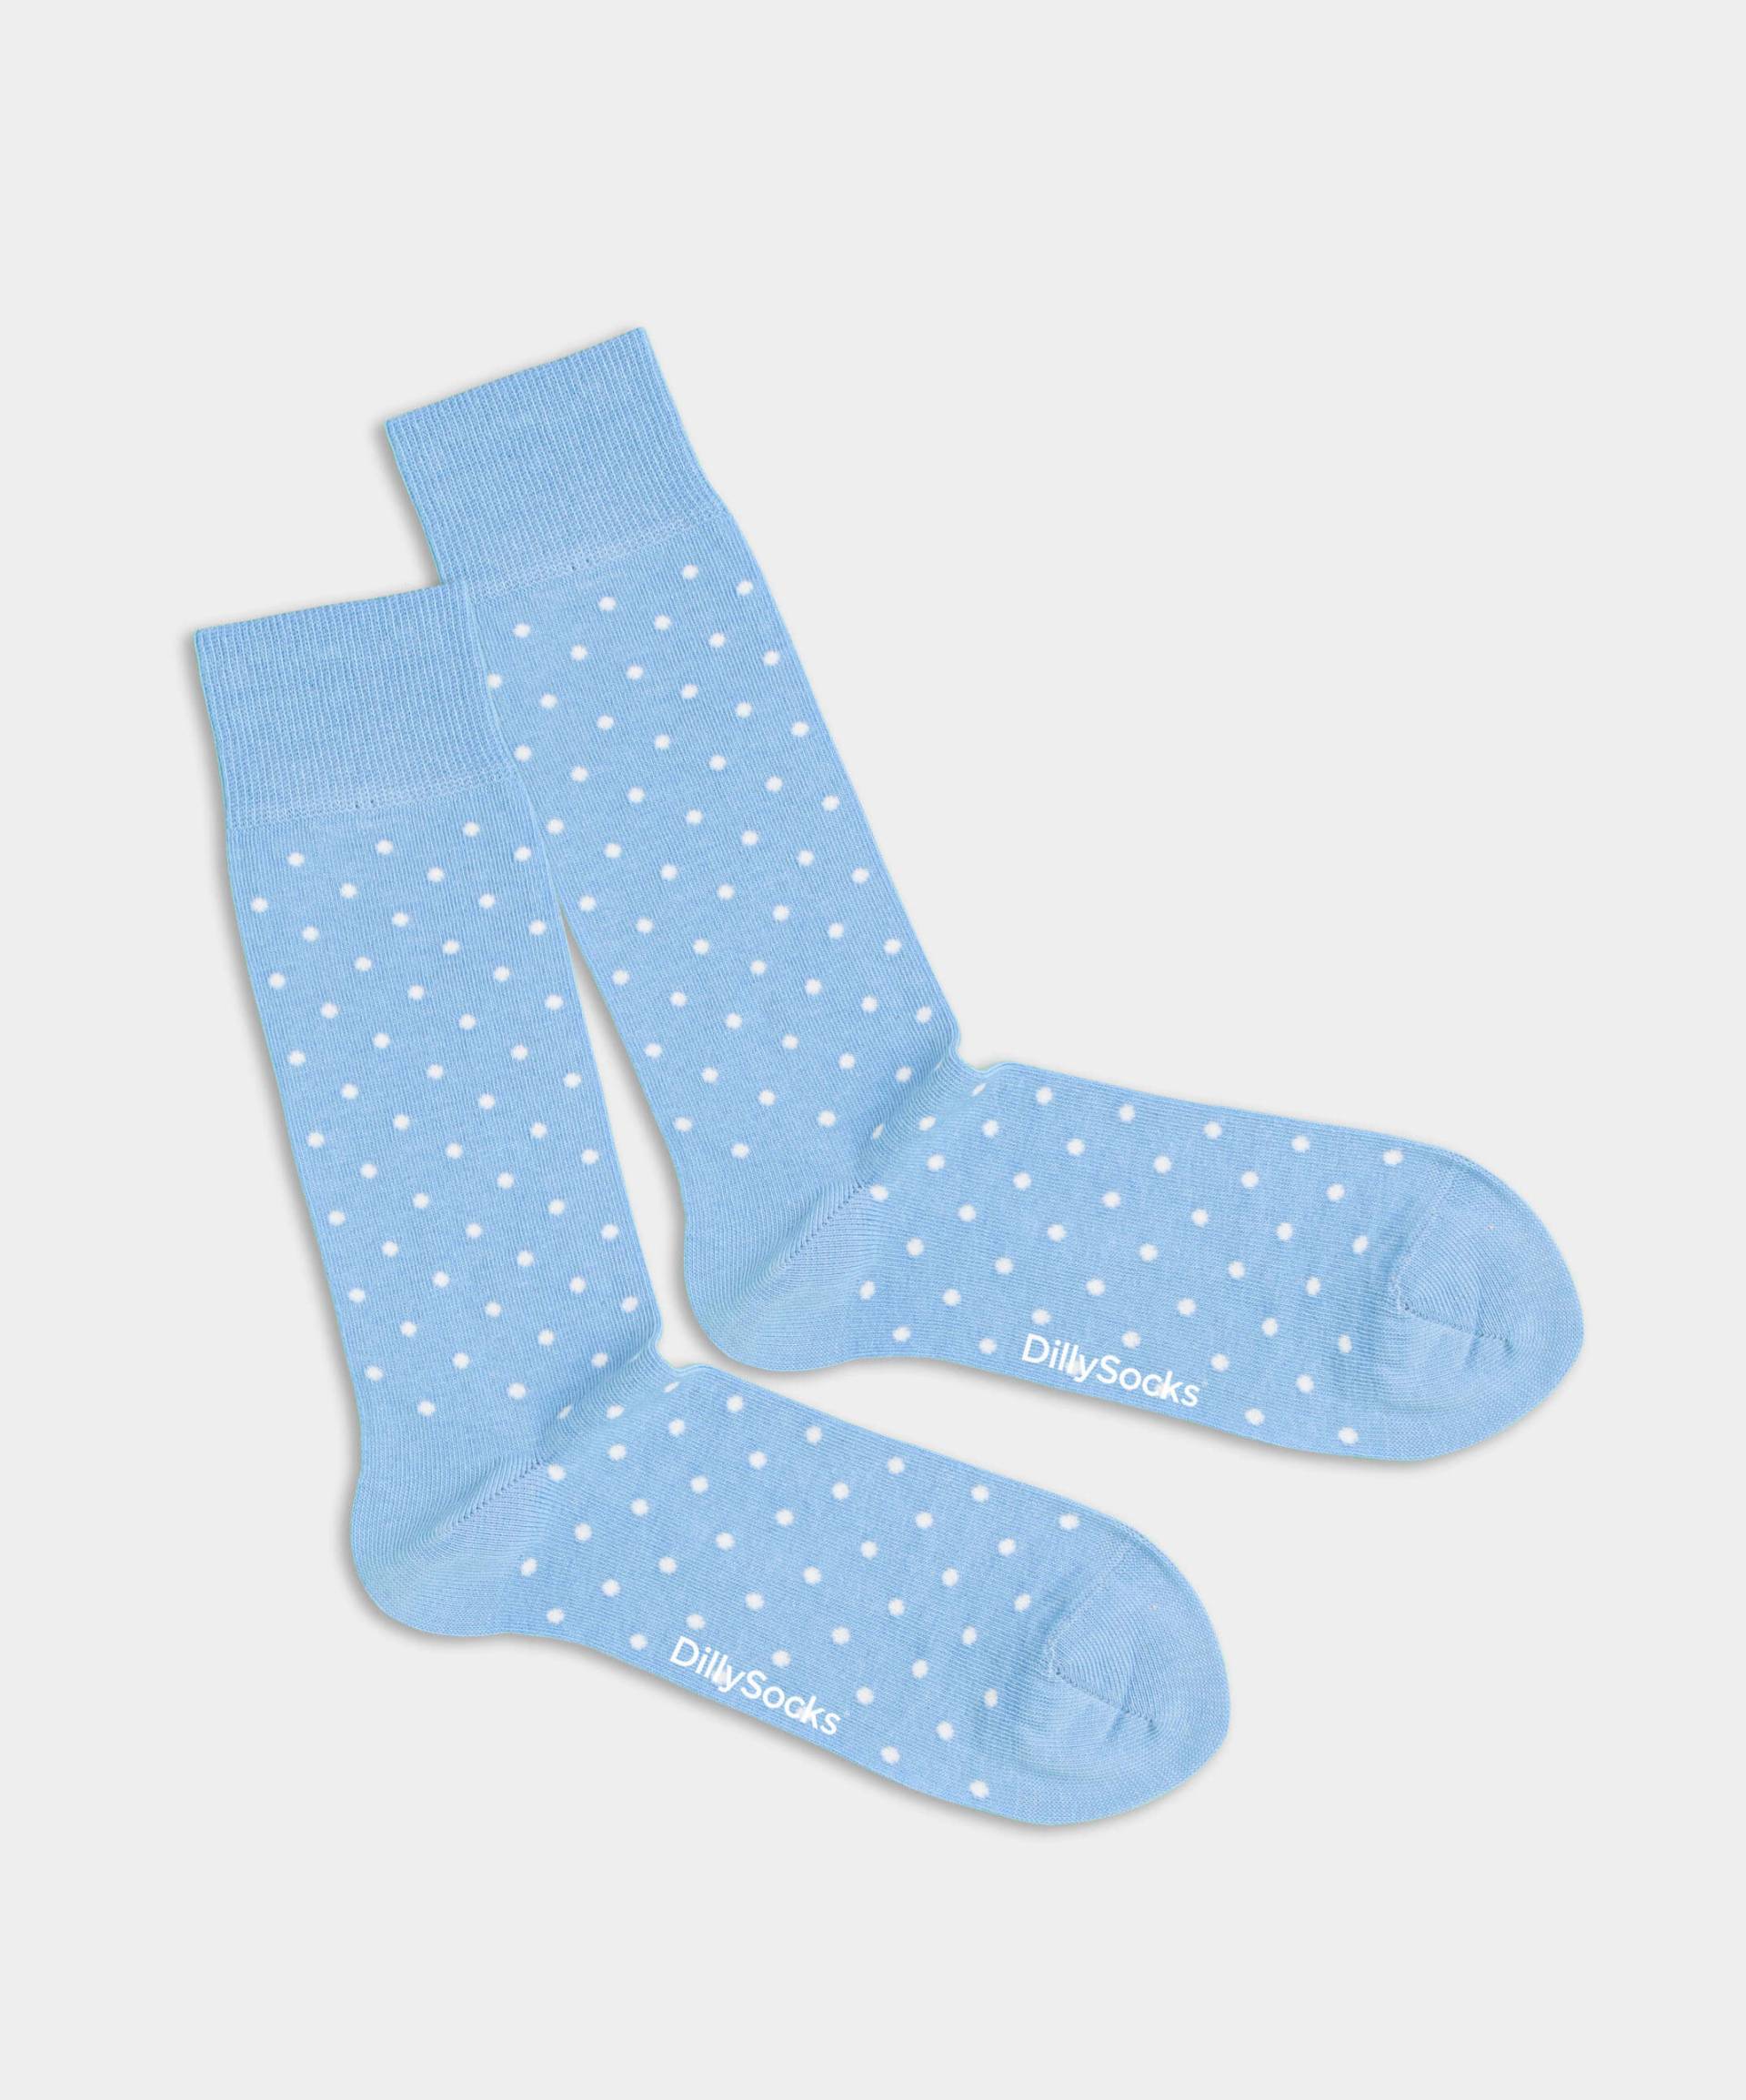 - Socken in Blau mit Punkte Motiv/Muster von DillySocks